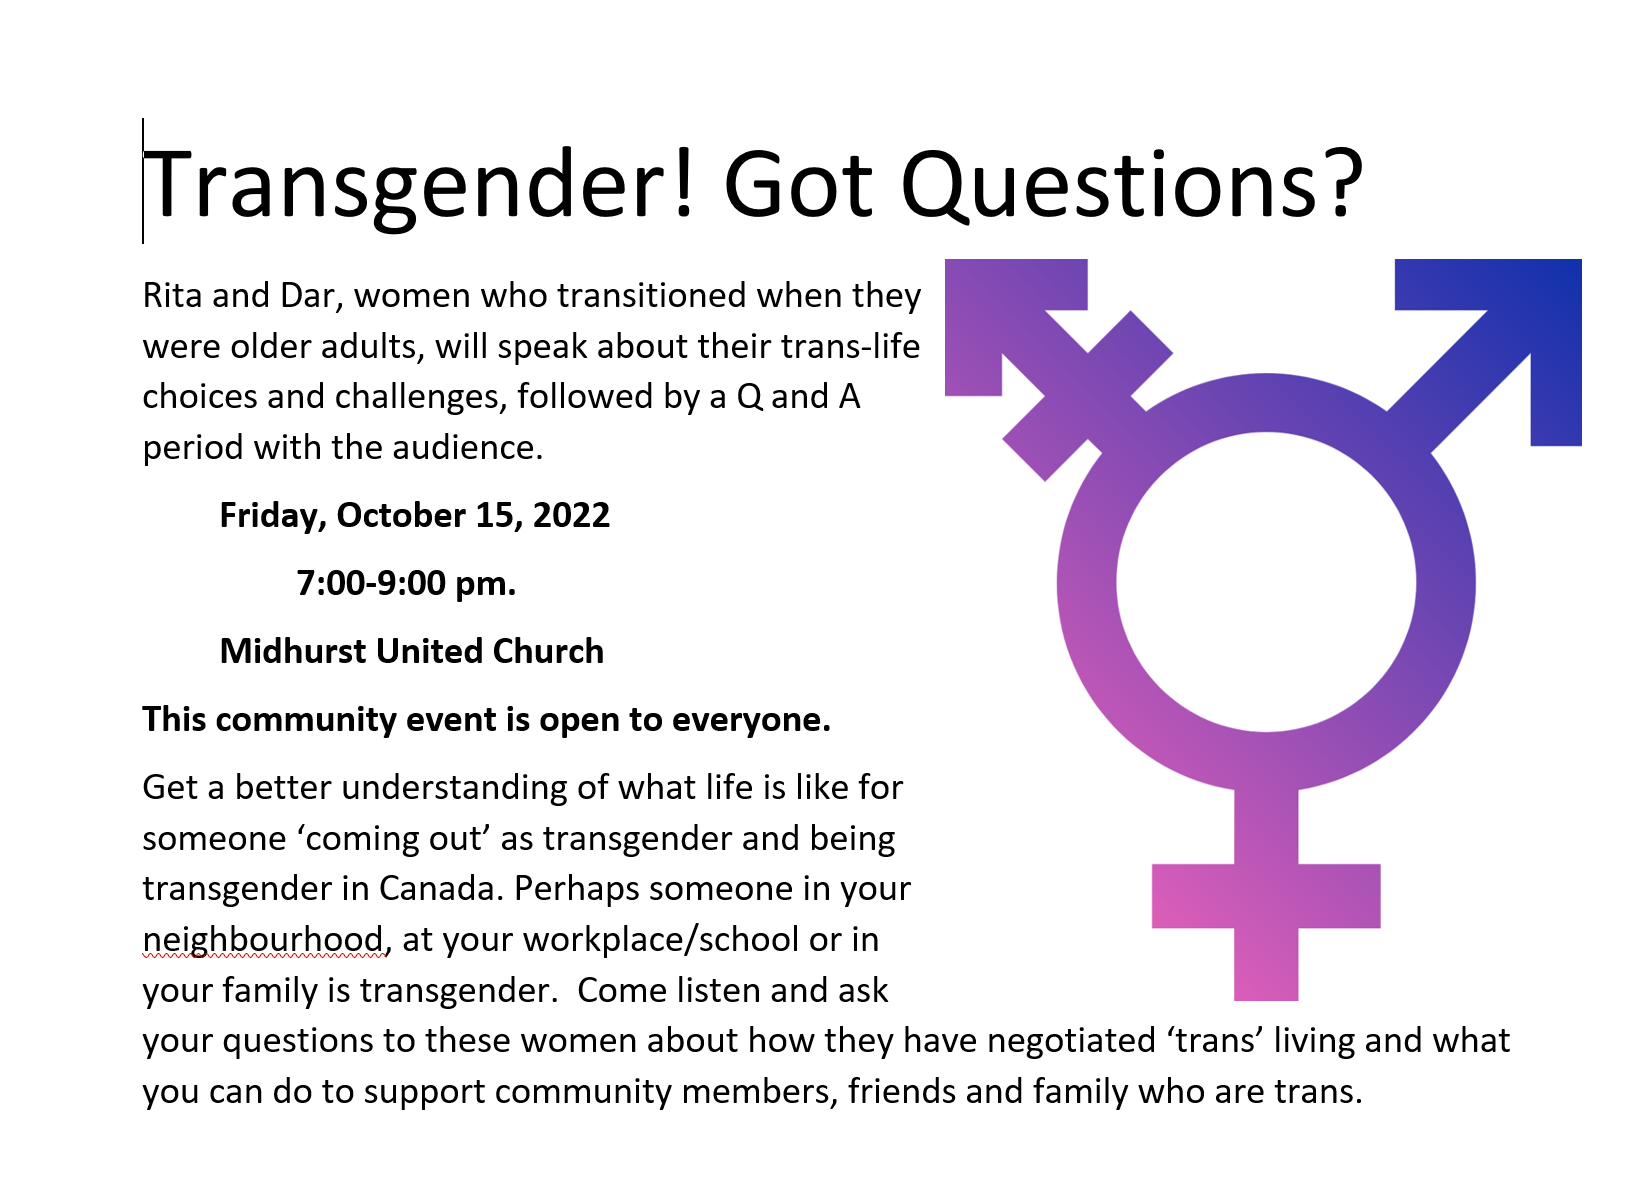 trans gender, got questions poster info